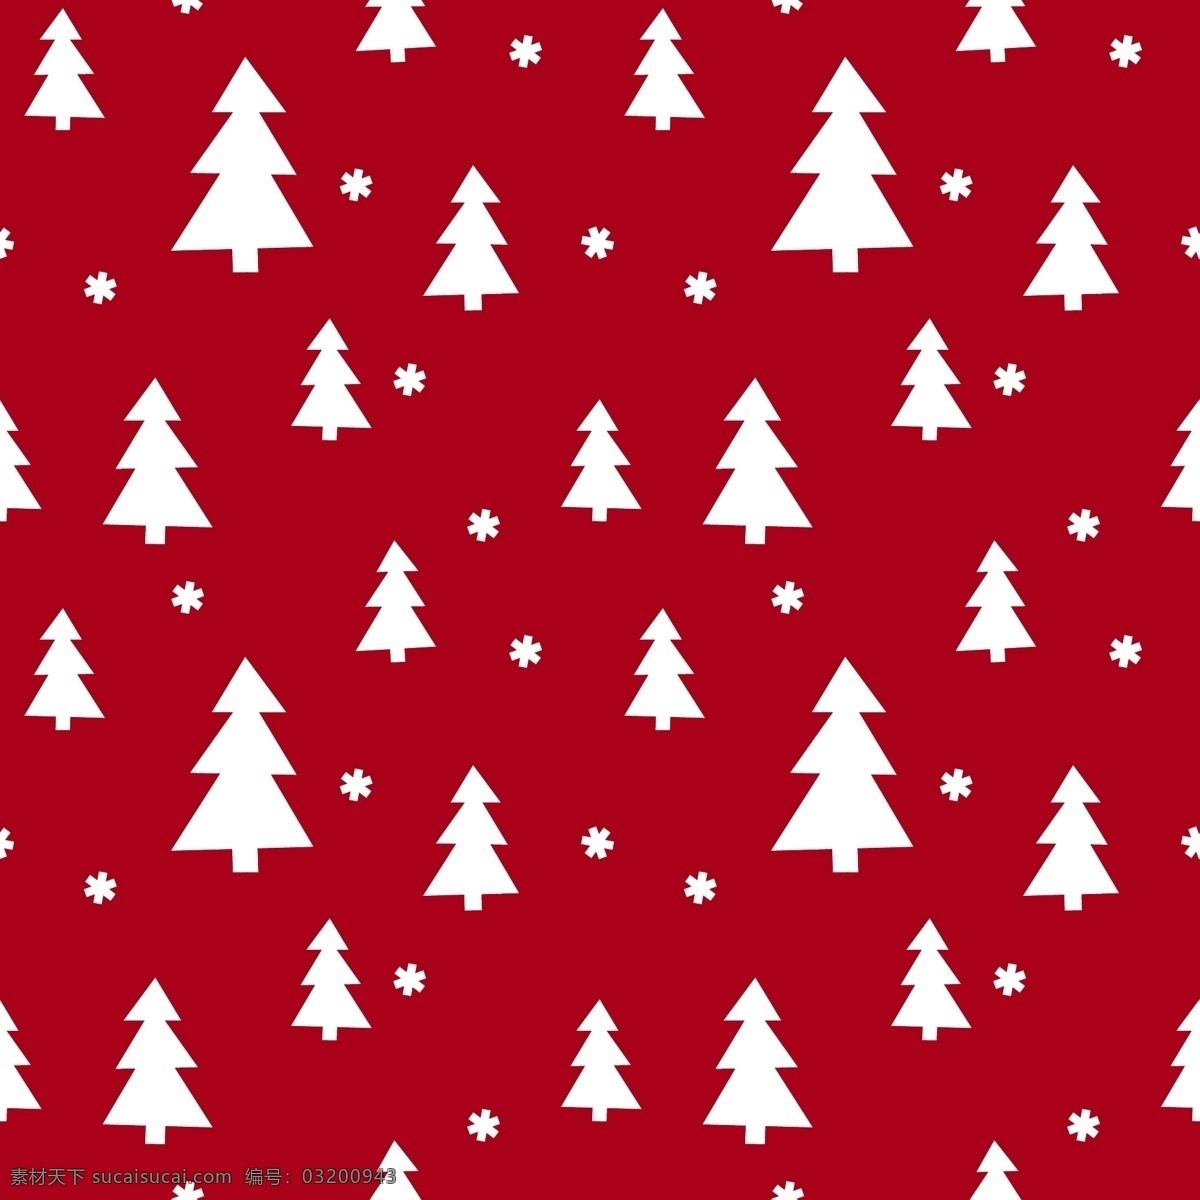 圣诞装饰图案 圣诞装饰背景 圣诞节 无缝背景 雪花 圣诞树 圣诞海报背景 2015 年 新年 羊年 文化艺术 节日庆祝 矢量